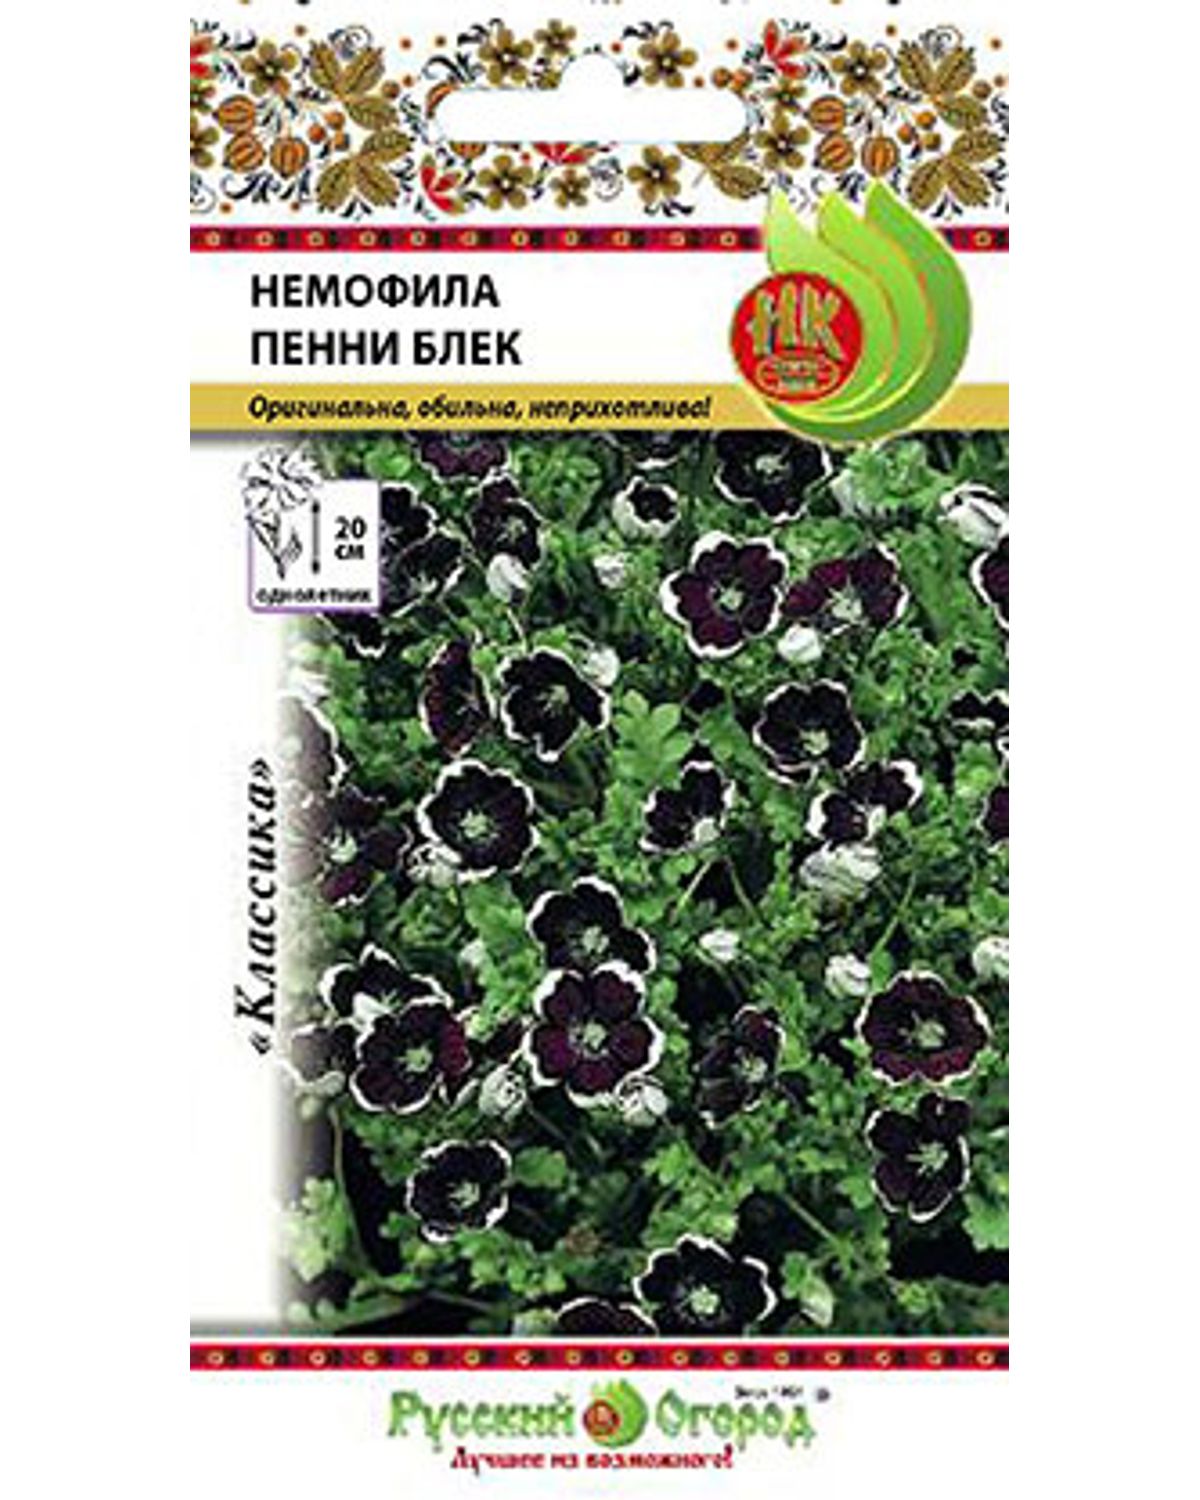 Семена Русский огород Немофила Пенни Блек, 0,2 г